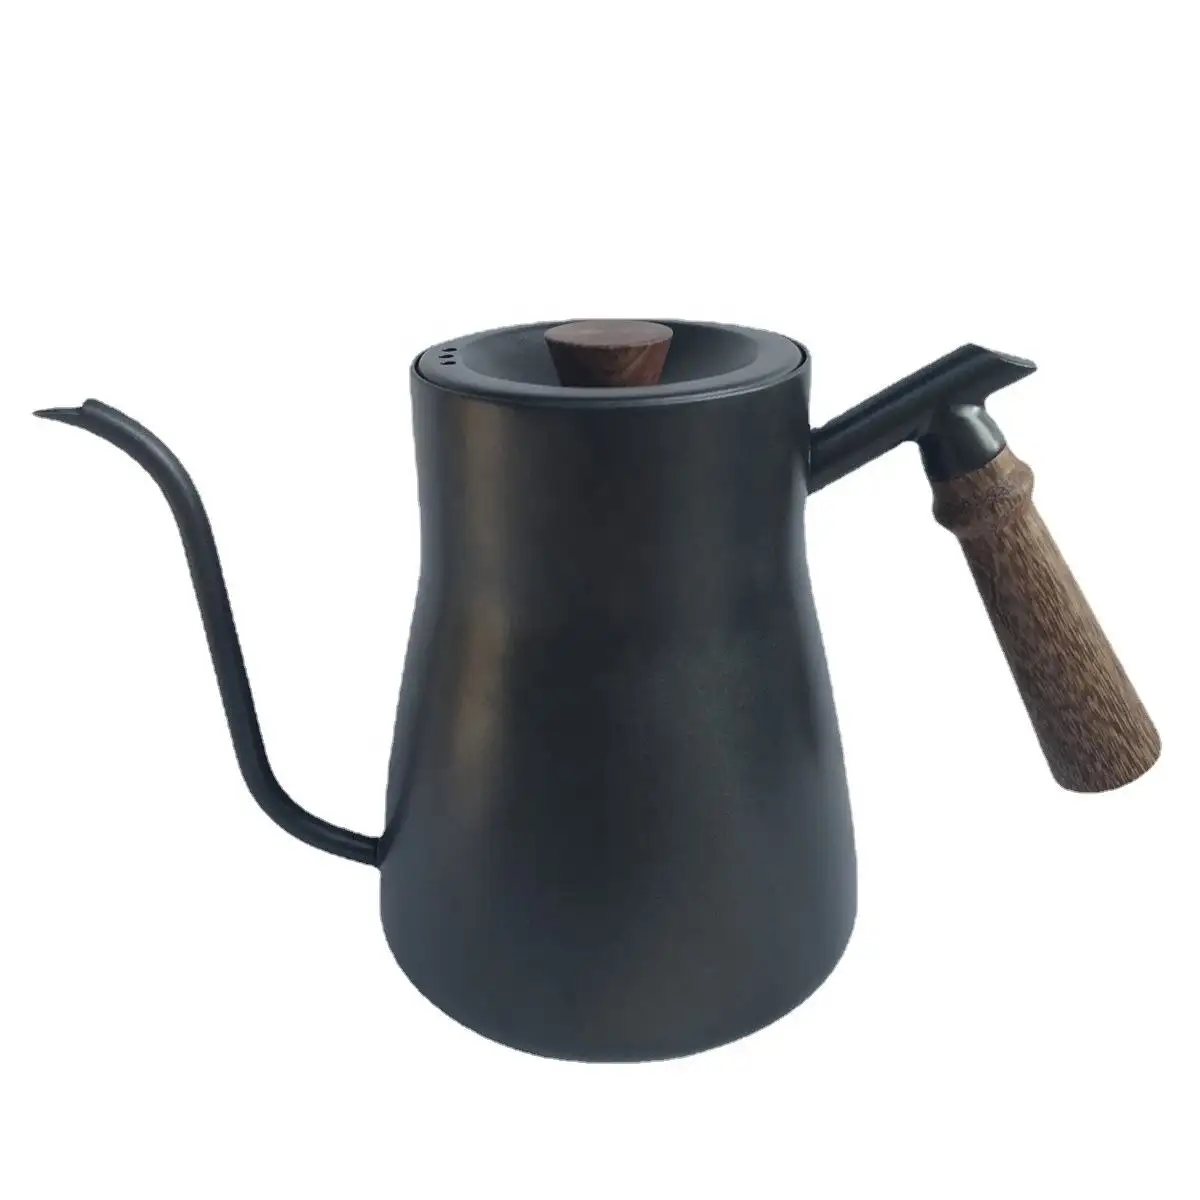 Vendita calda per uso alimentare in acciaio inox bollitore acqua per versare sopra il caffè a collo di cigno con termometro